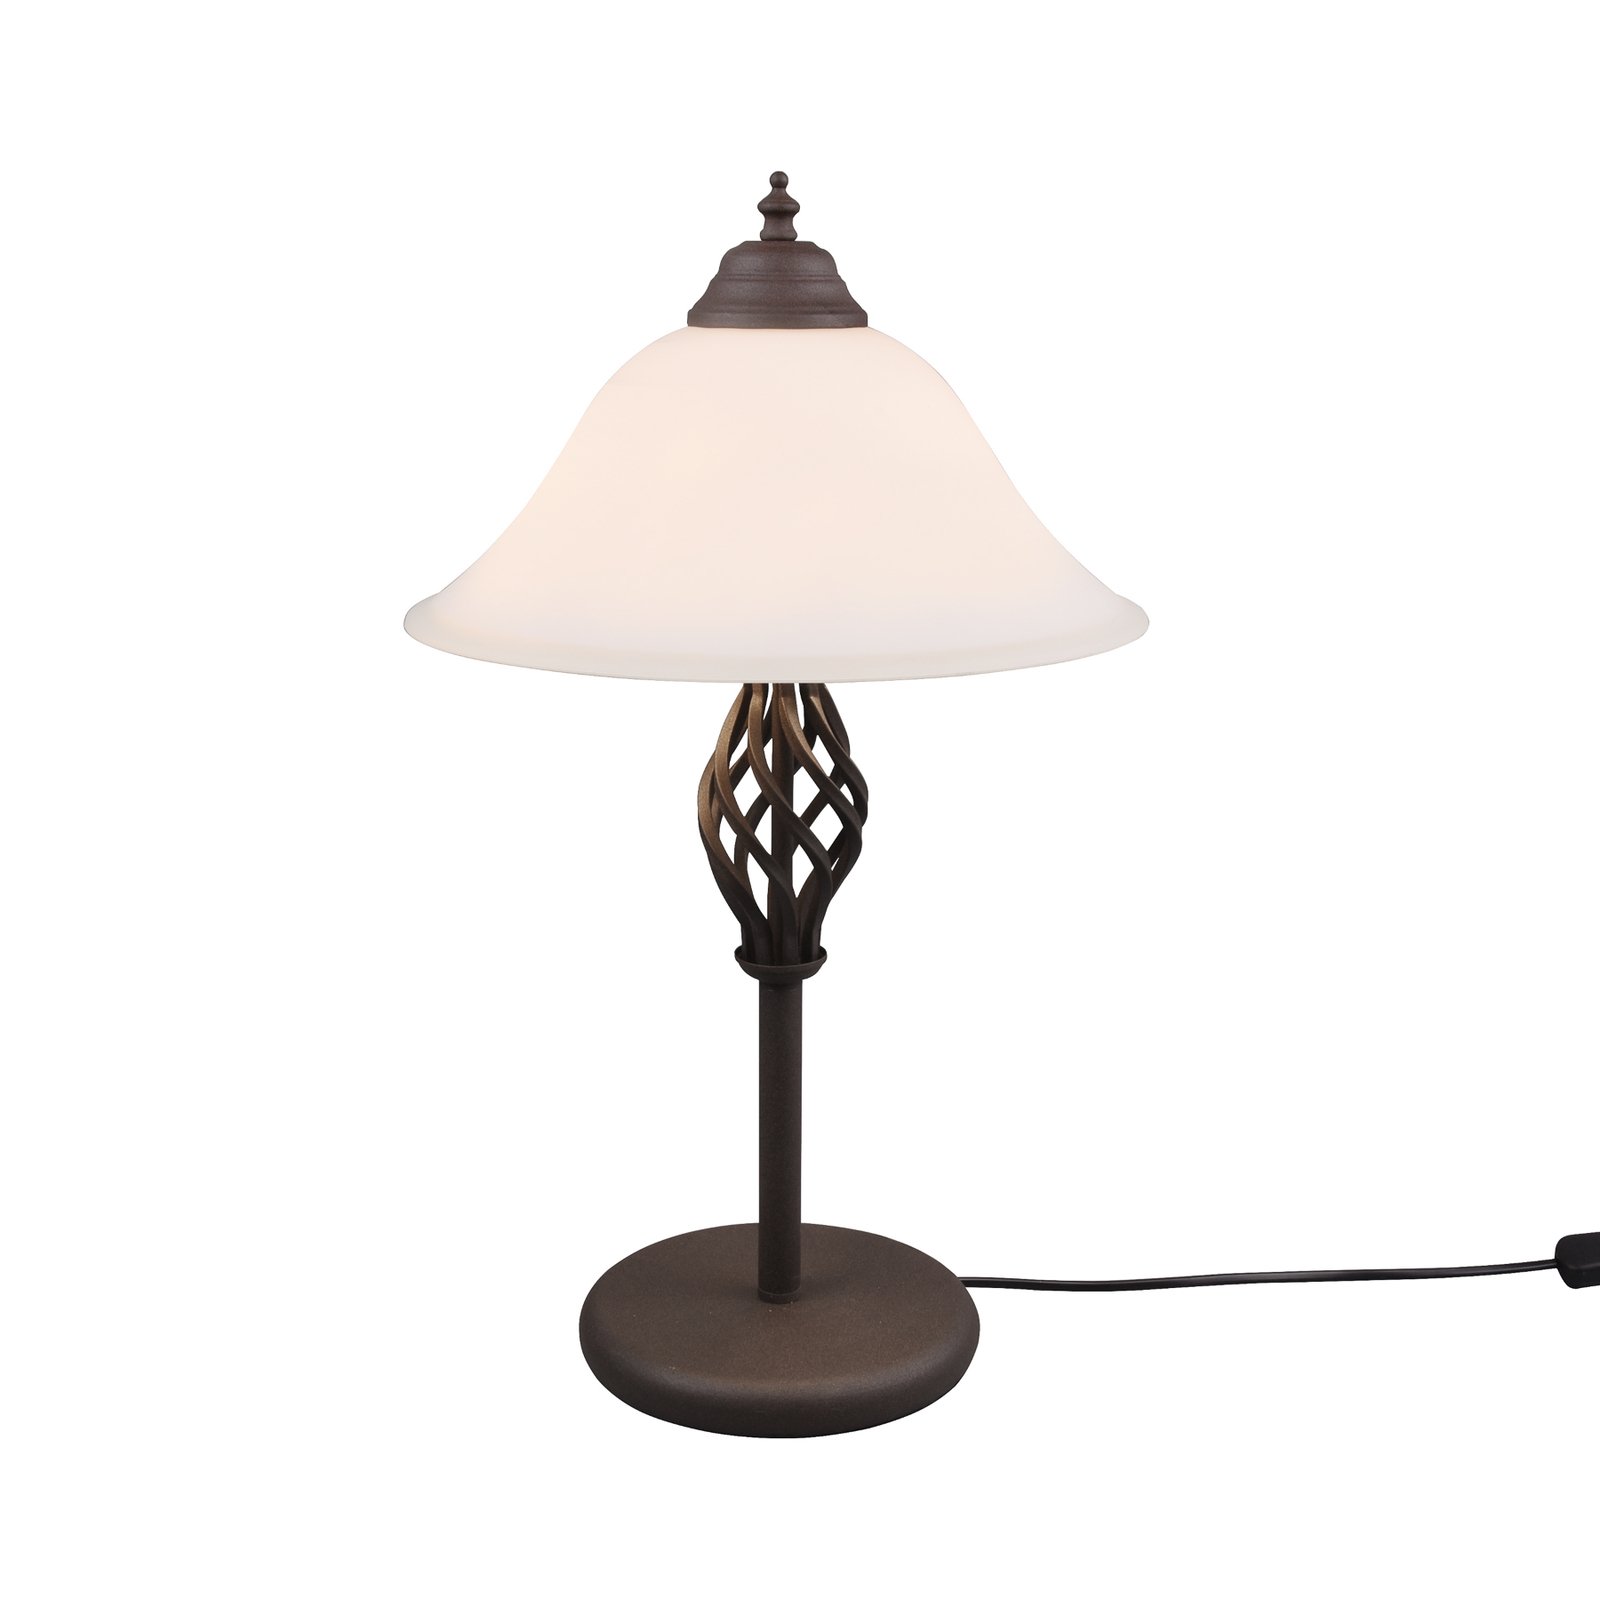 Rustica bordlampe med snorekontakt, rust